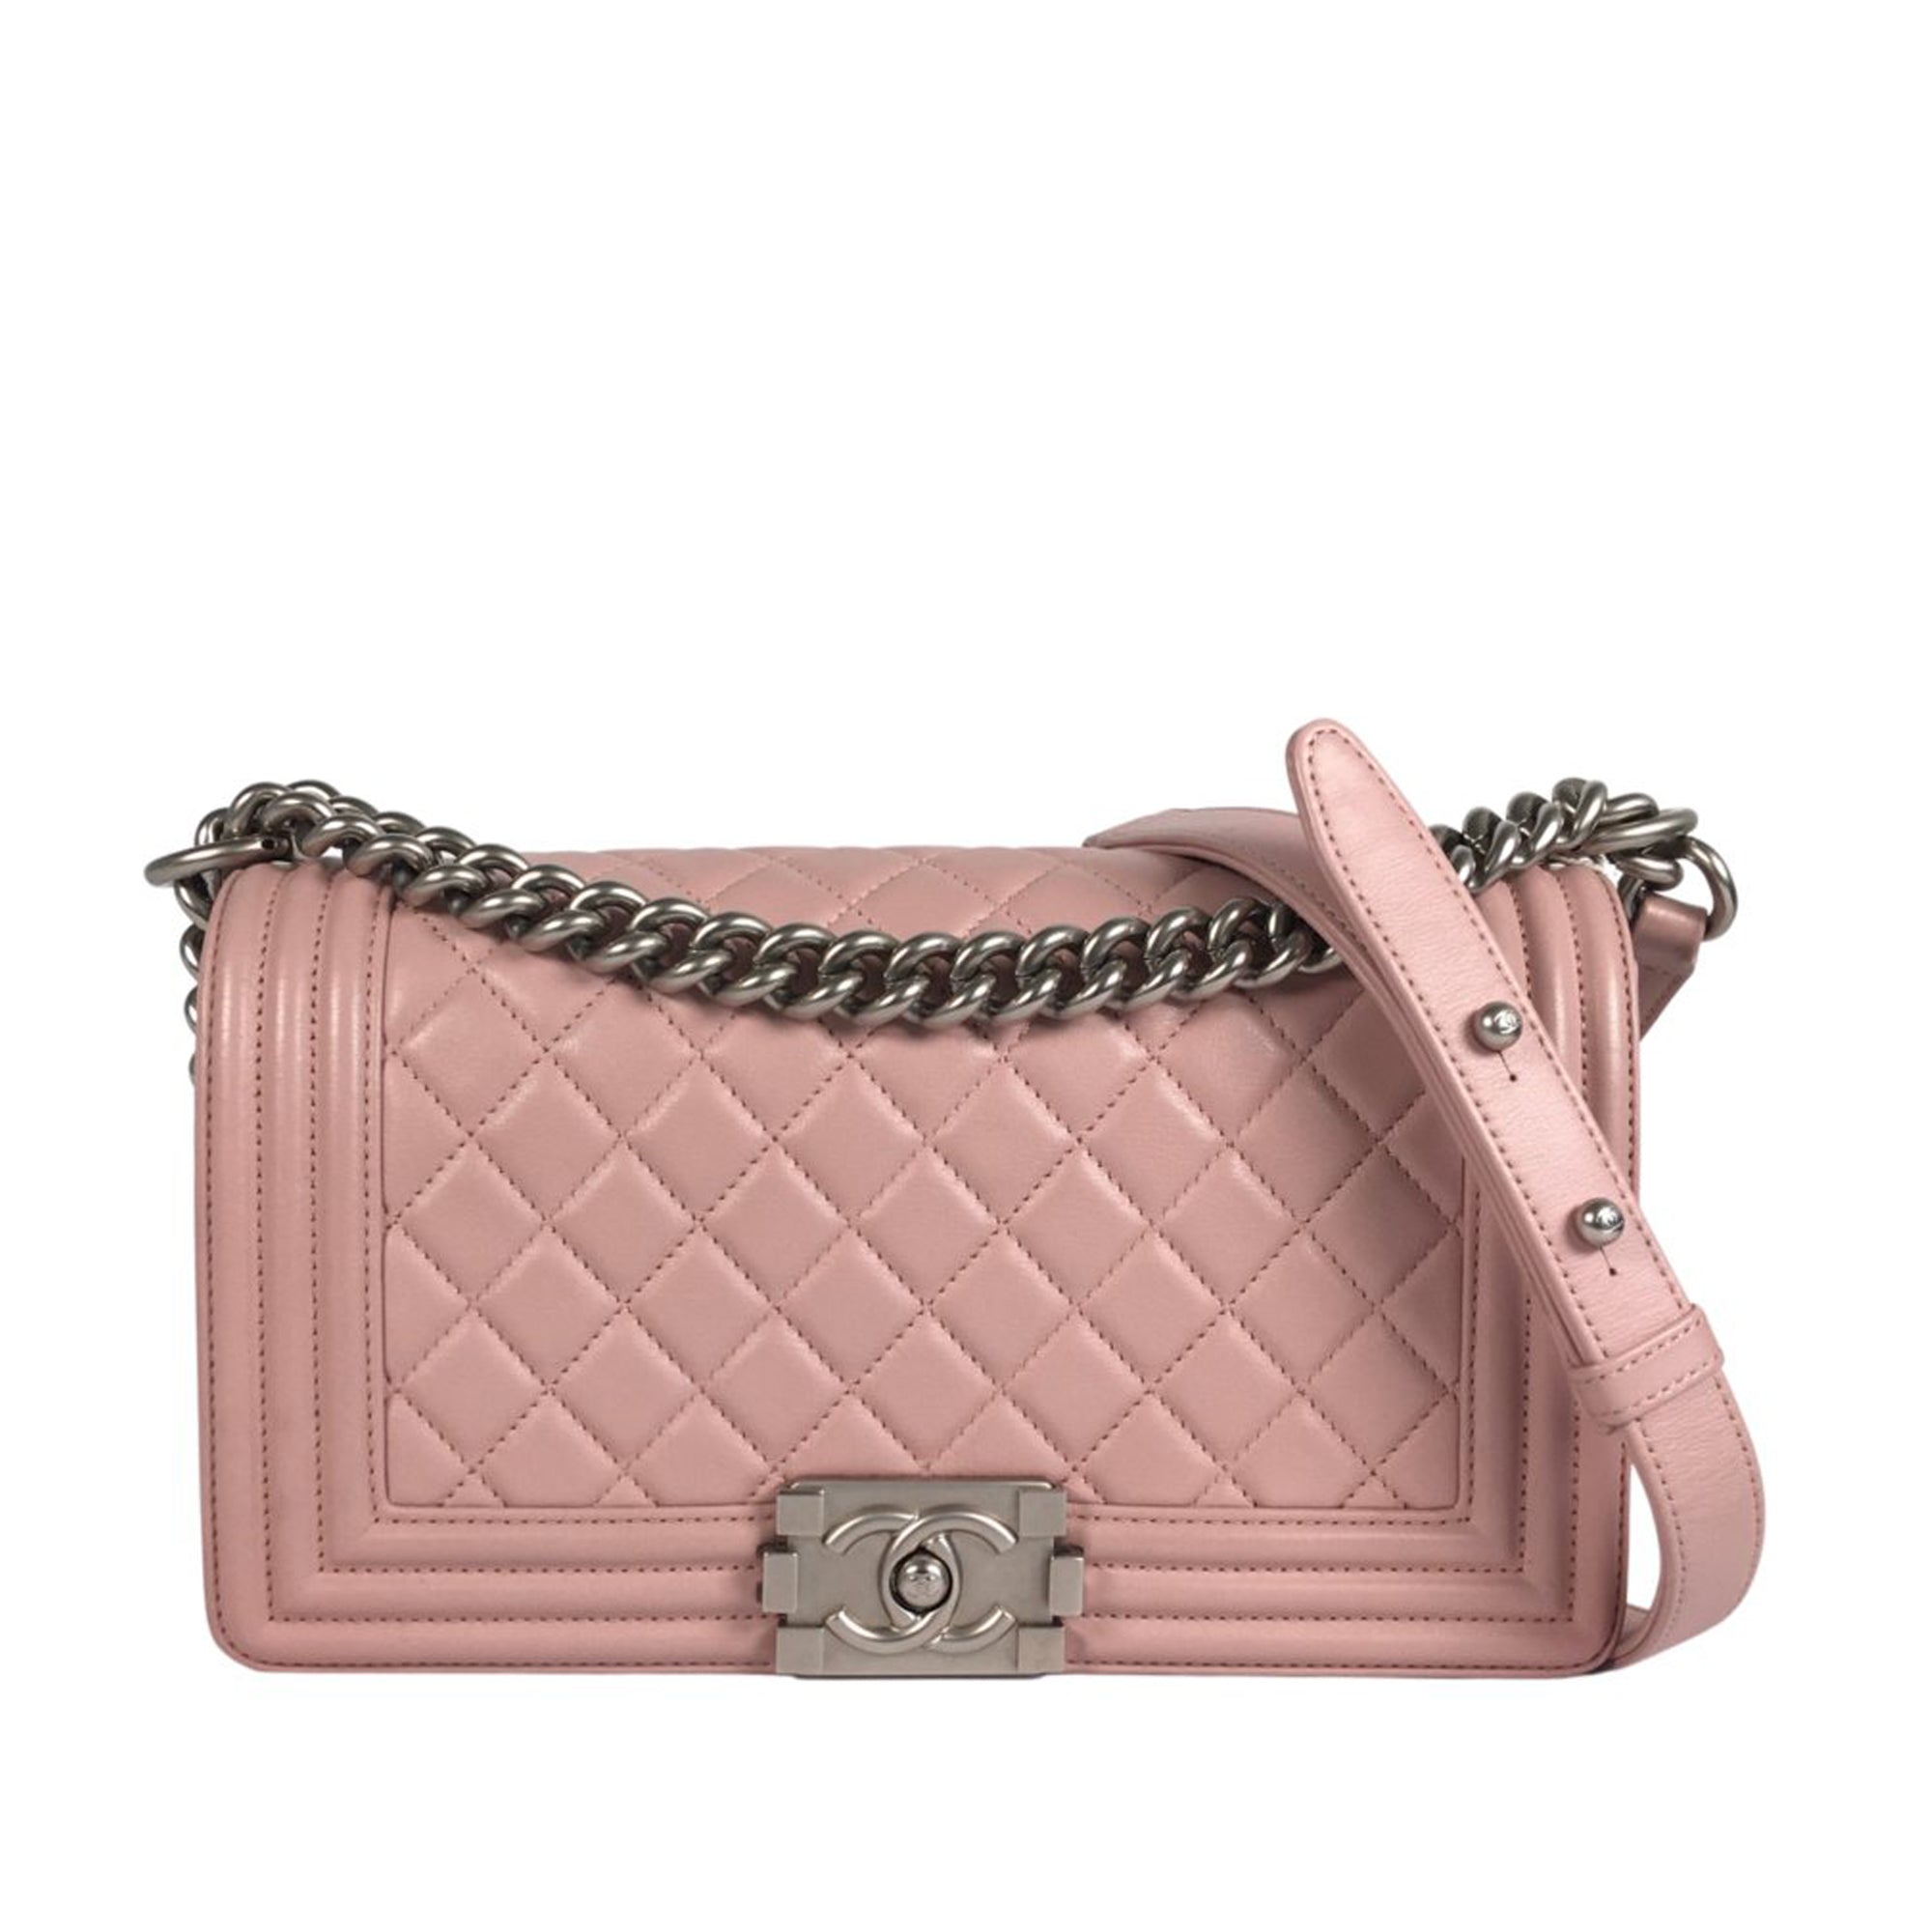 Pink Chanel Medium Boy Flap Bag